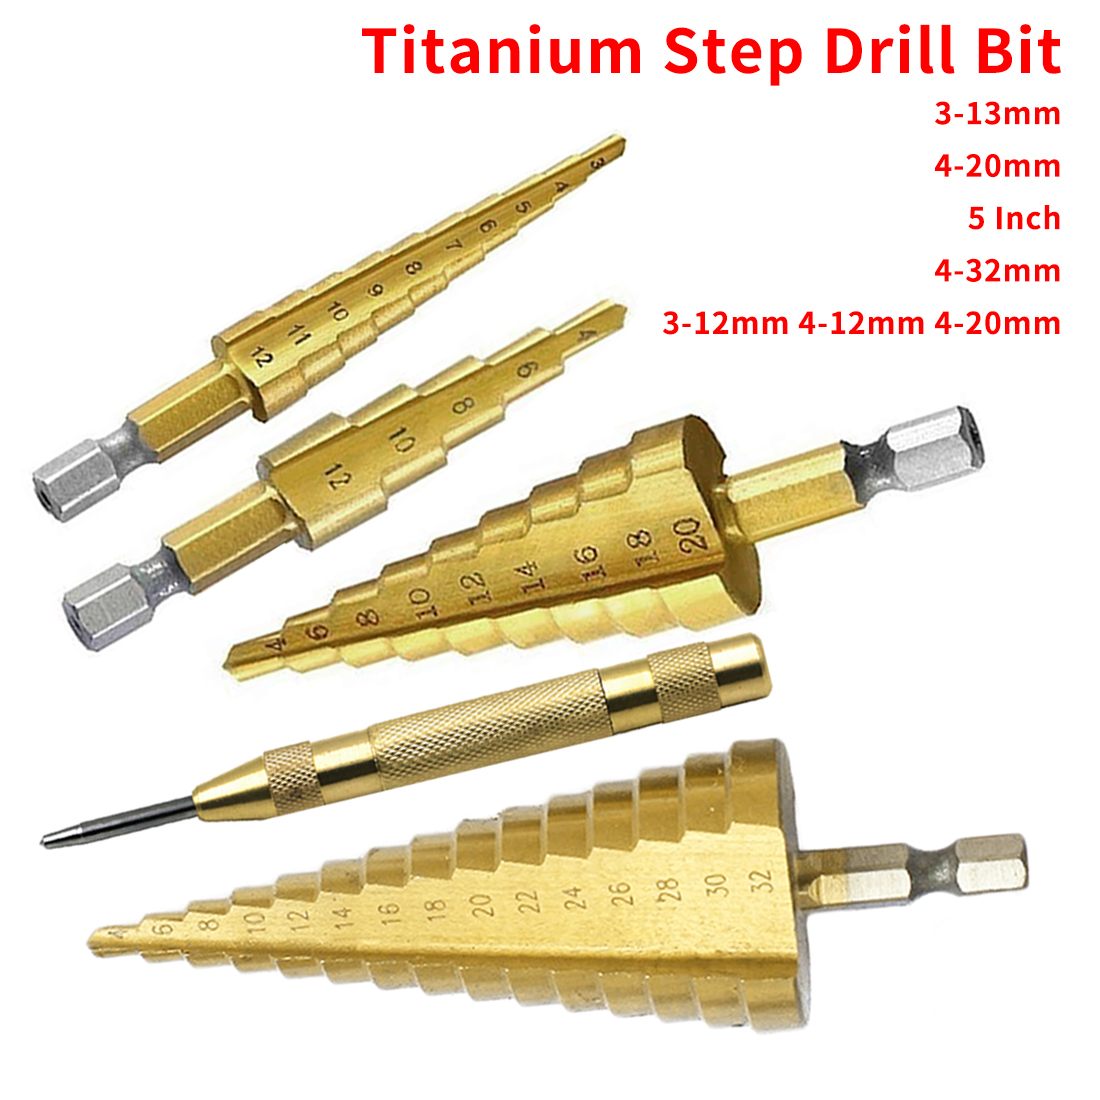 4-12mm 4-20mm 4-32mm HSS Step Cone Golden Drill Bit Hex Shank Hole Cutters NEW